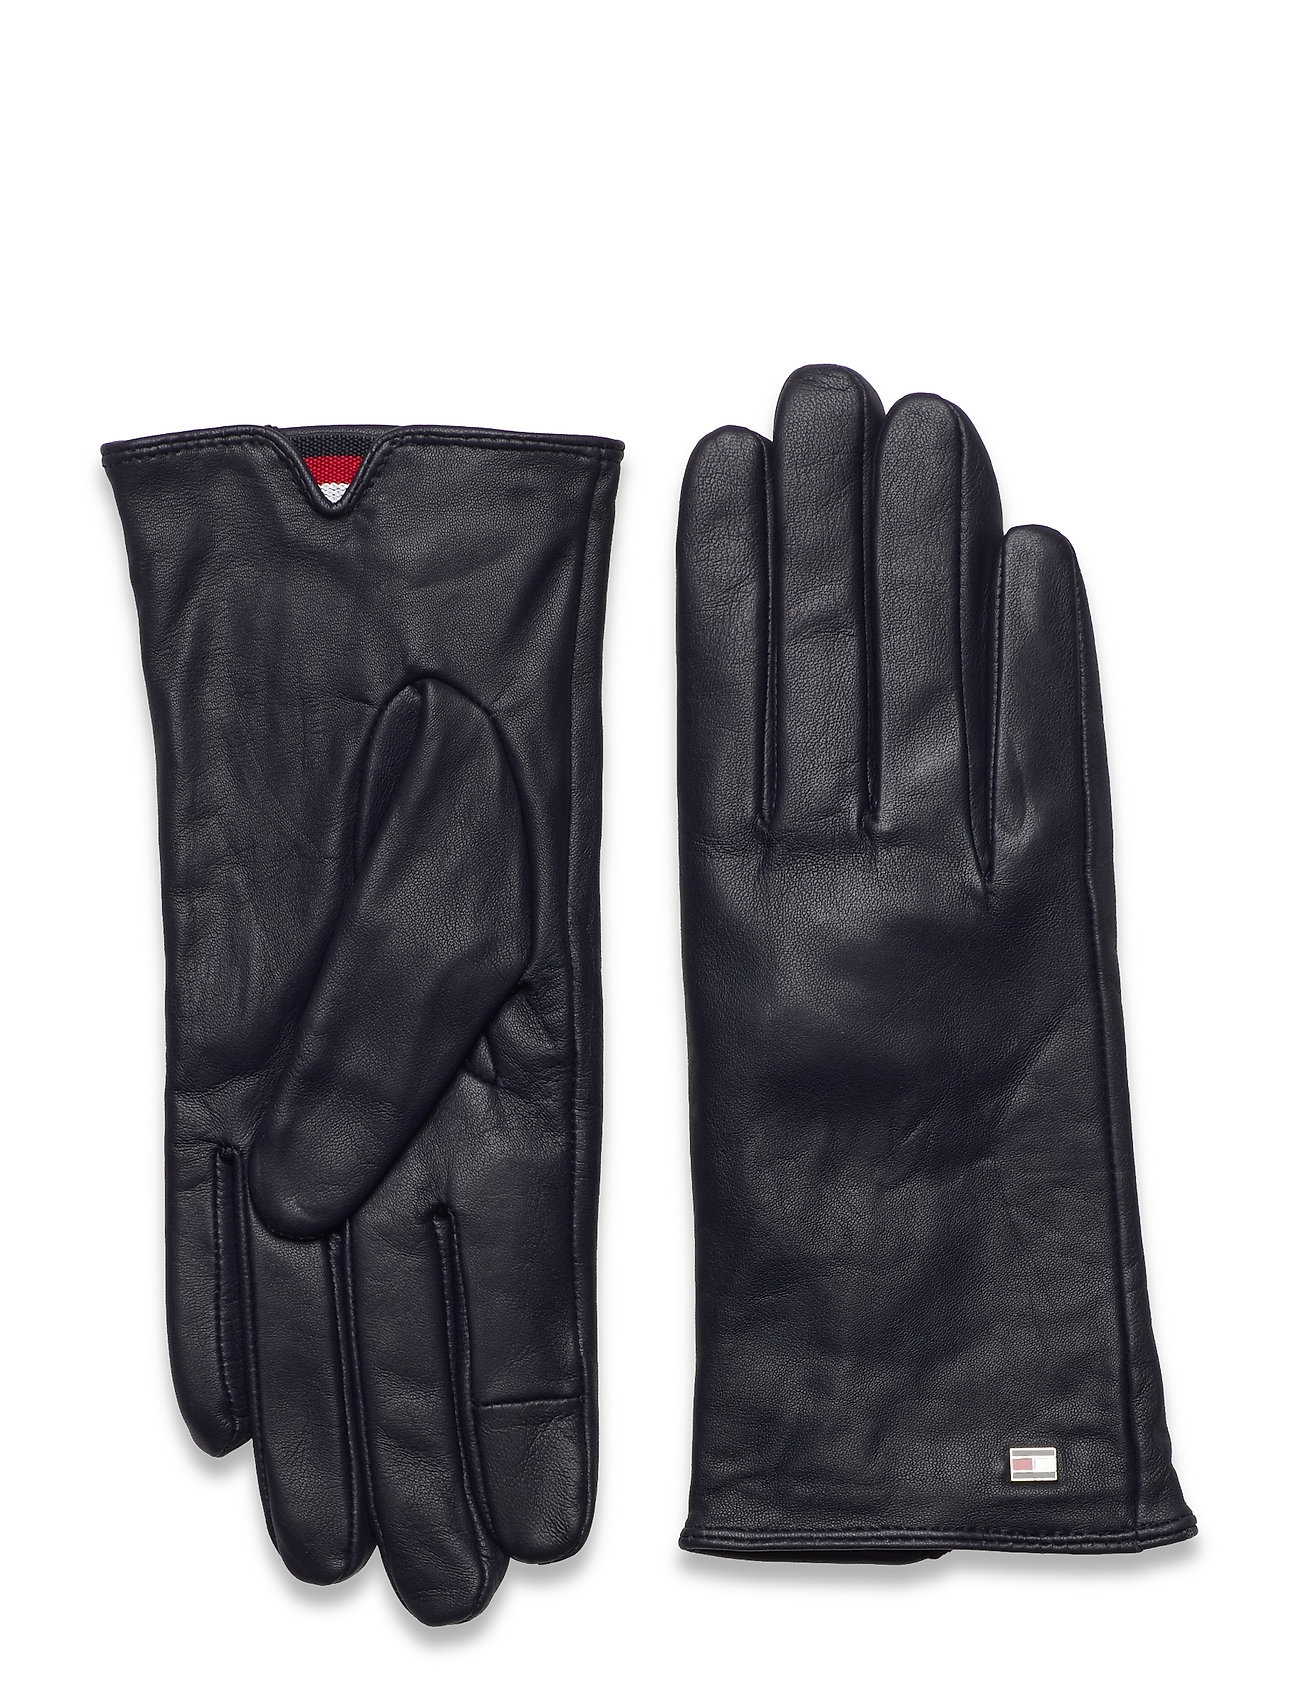 Leather Gloves Handsker Sort Tommy handsker fra Tommy Hilfiger til dame i Sort - Pashion.dk